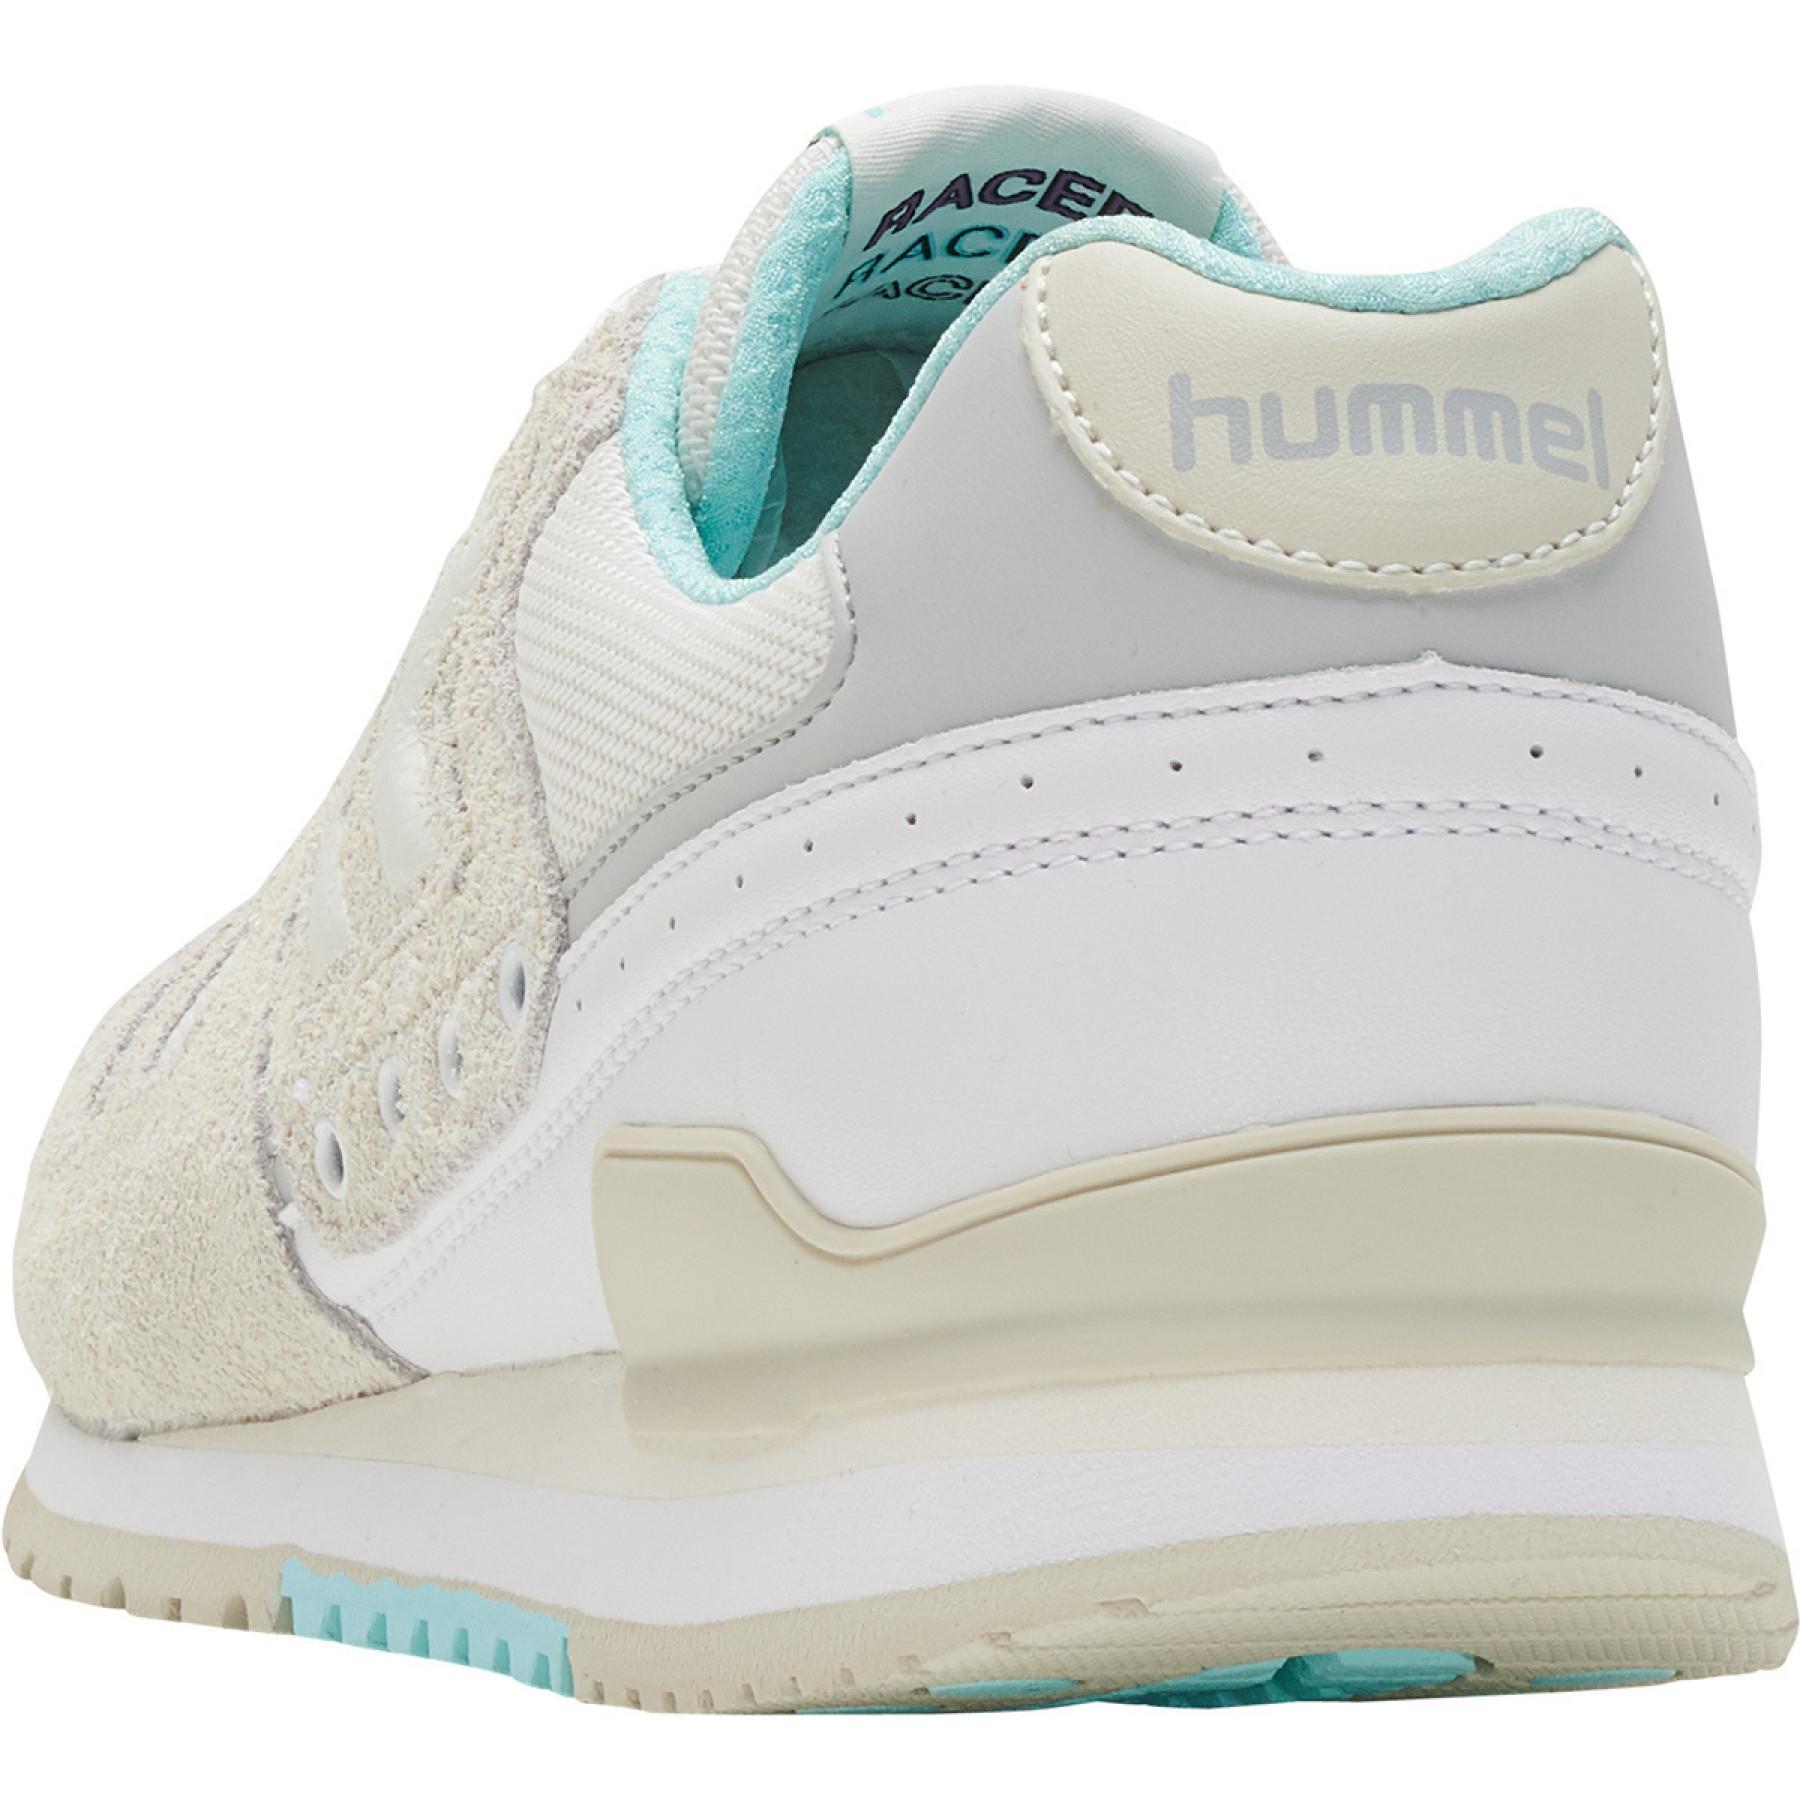 Chaussures Hummel marathona suede